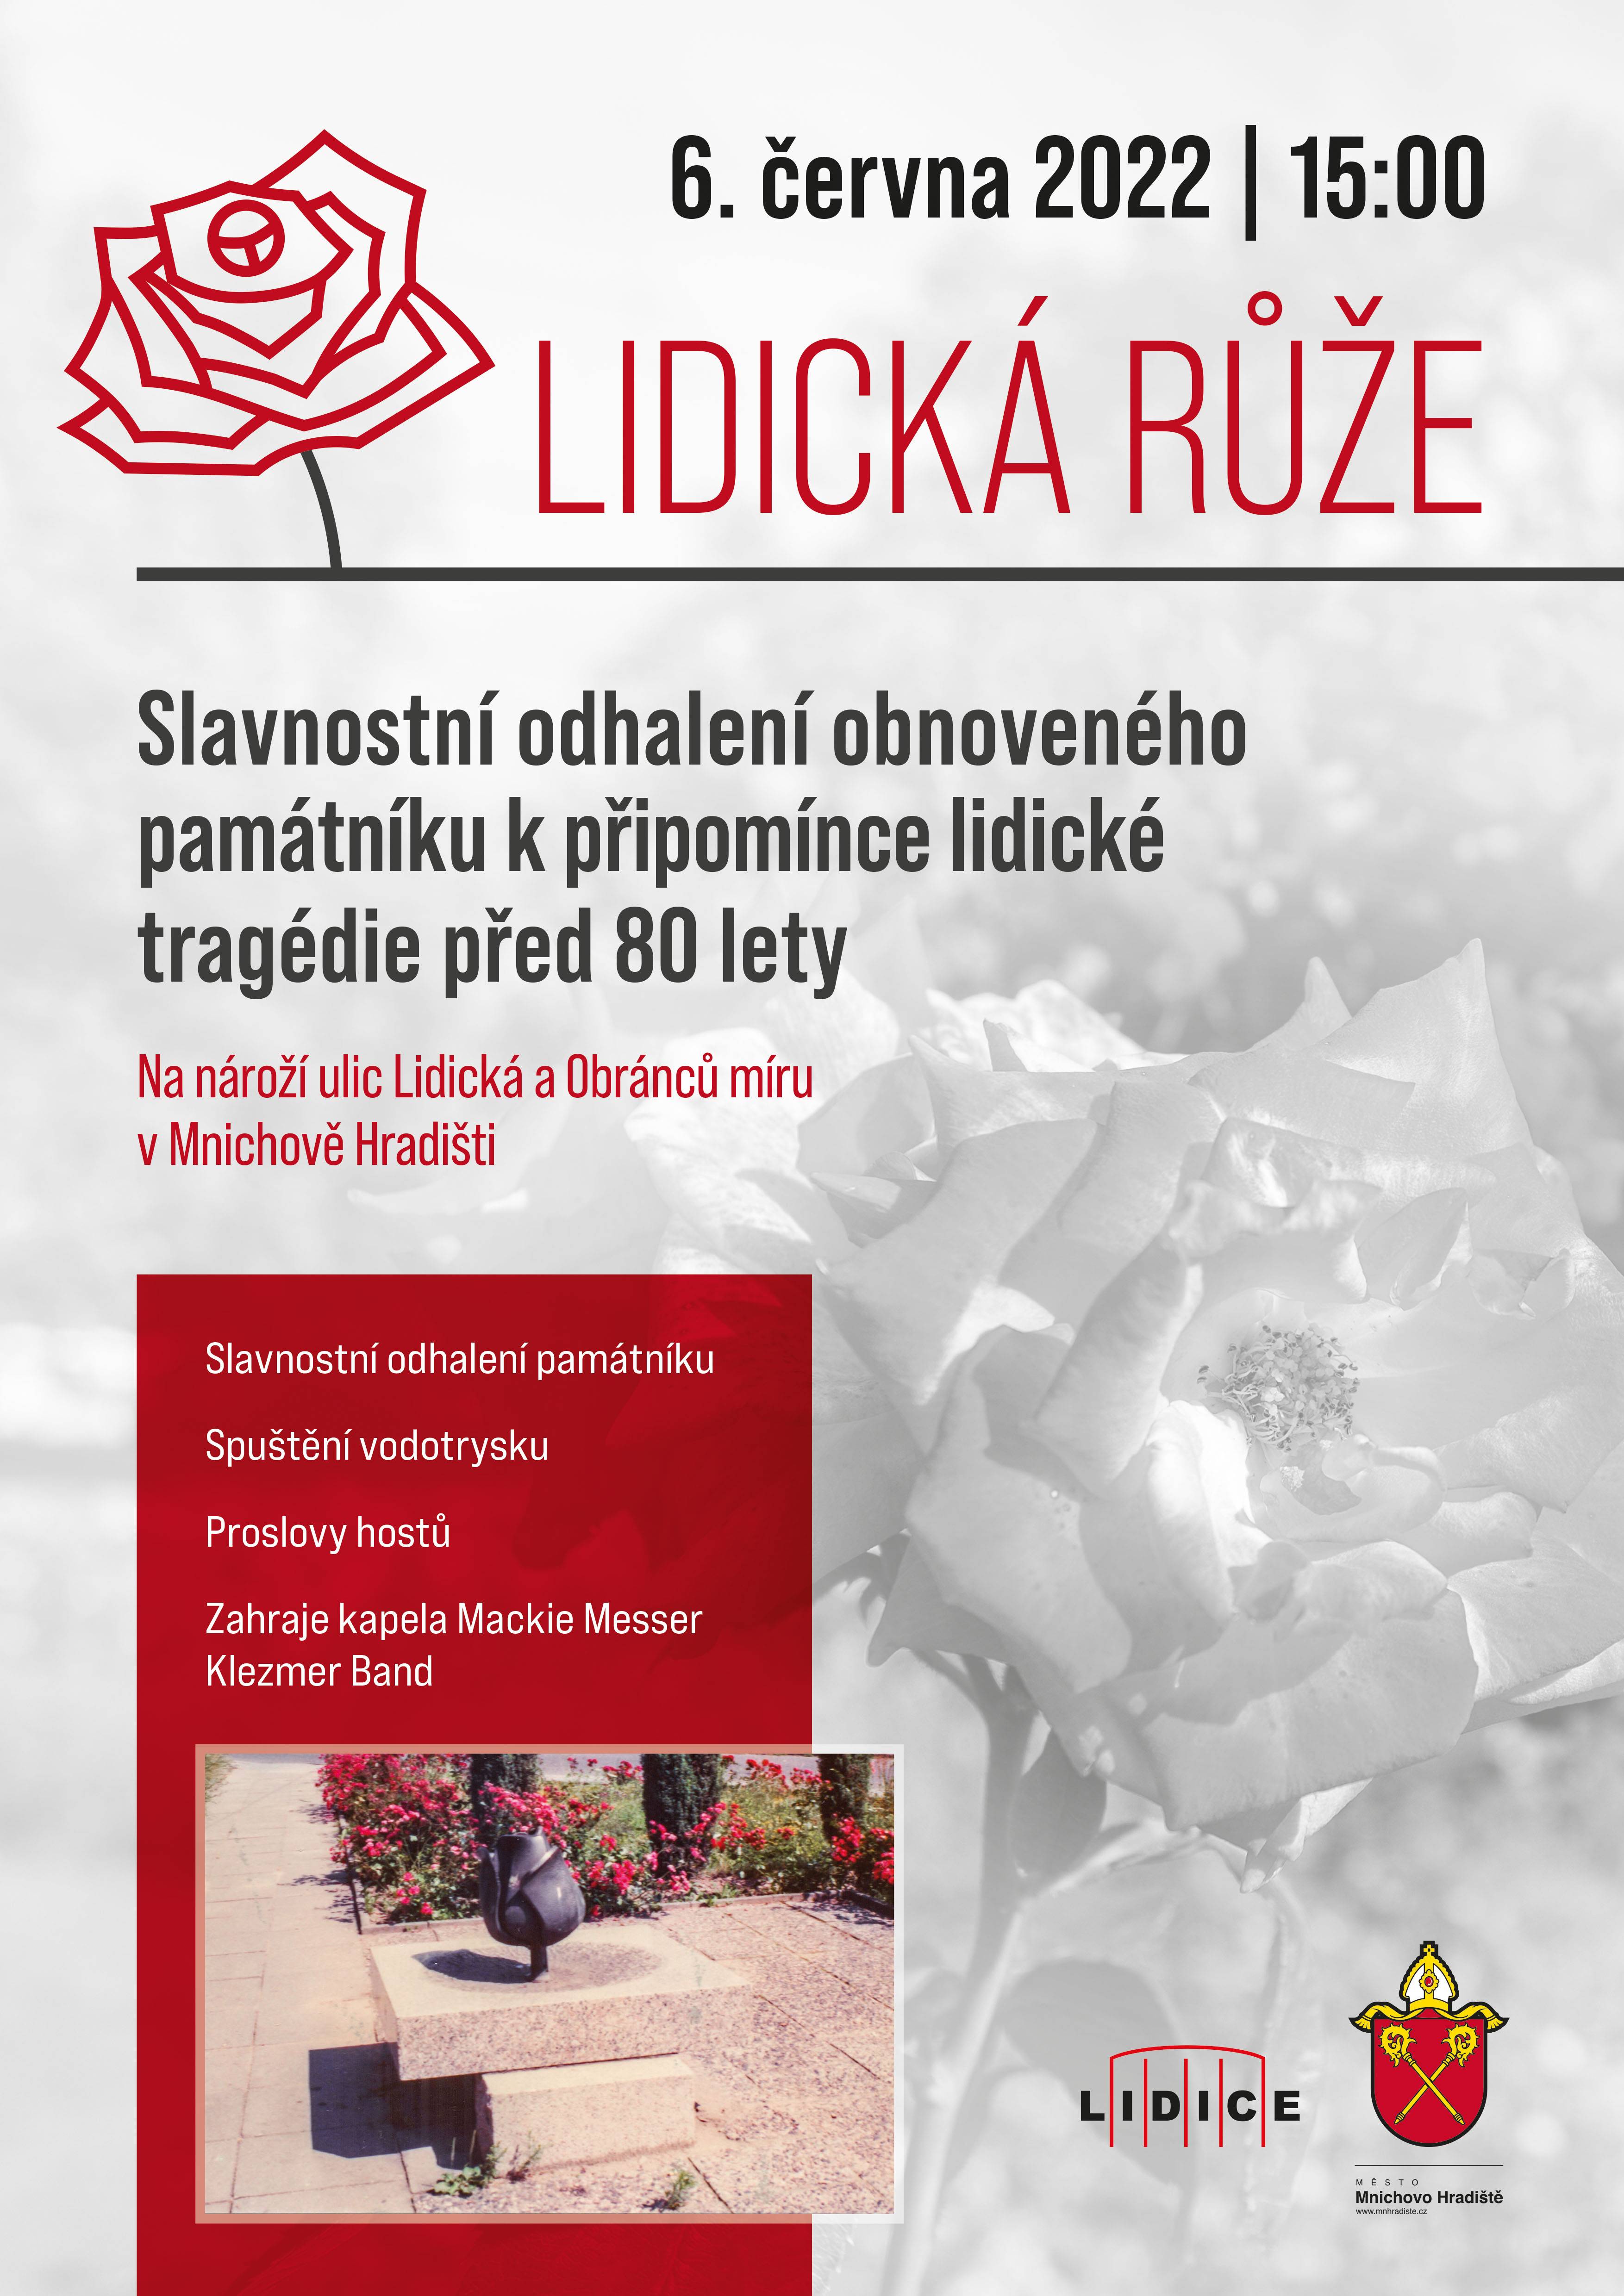 2022 06 06 Slavnostní odhalení obnoveného památníku Lidické růže